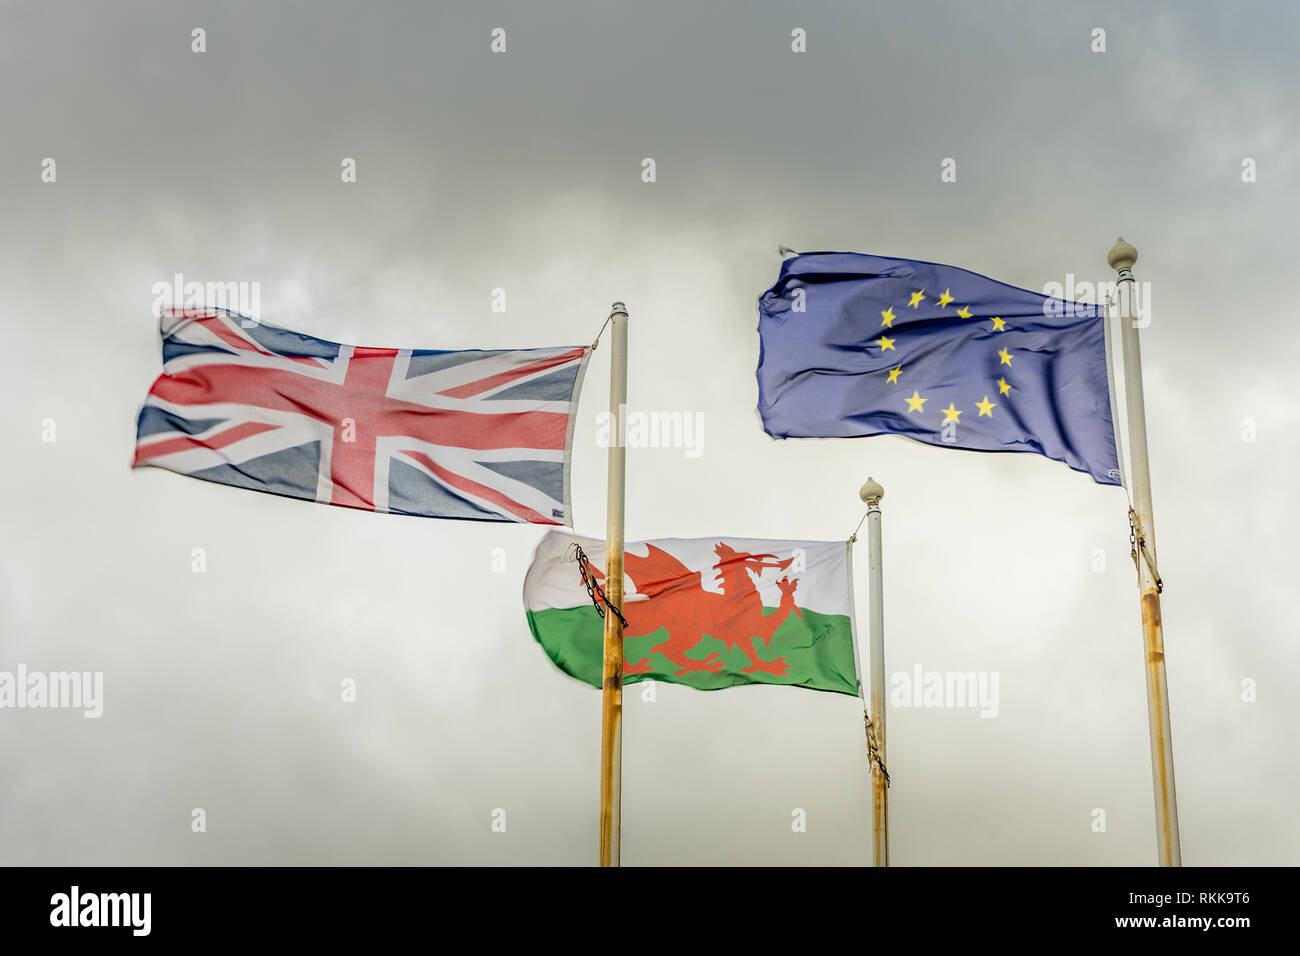 Le Dragon rouge d'un drapeau du pays de Galles, l'Union européenne (UE) et celui de l'Union Jack (drapeau du Royaume-Uni) Banque D'Images